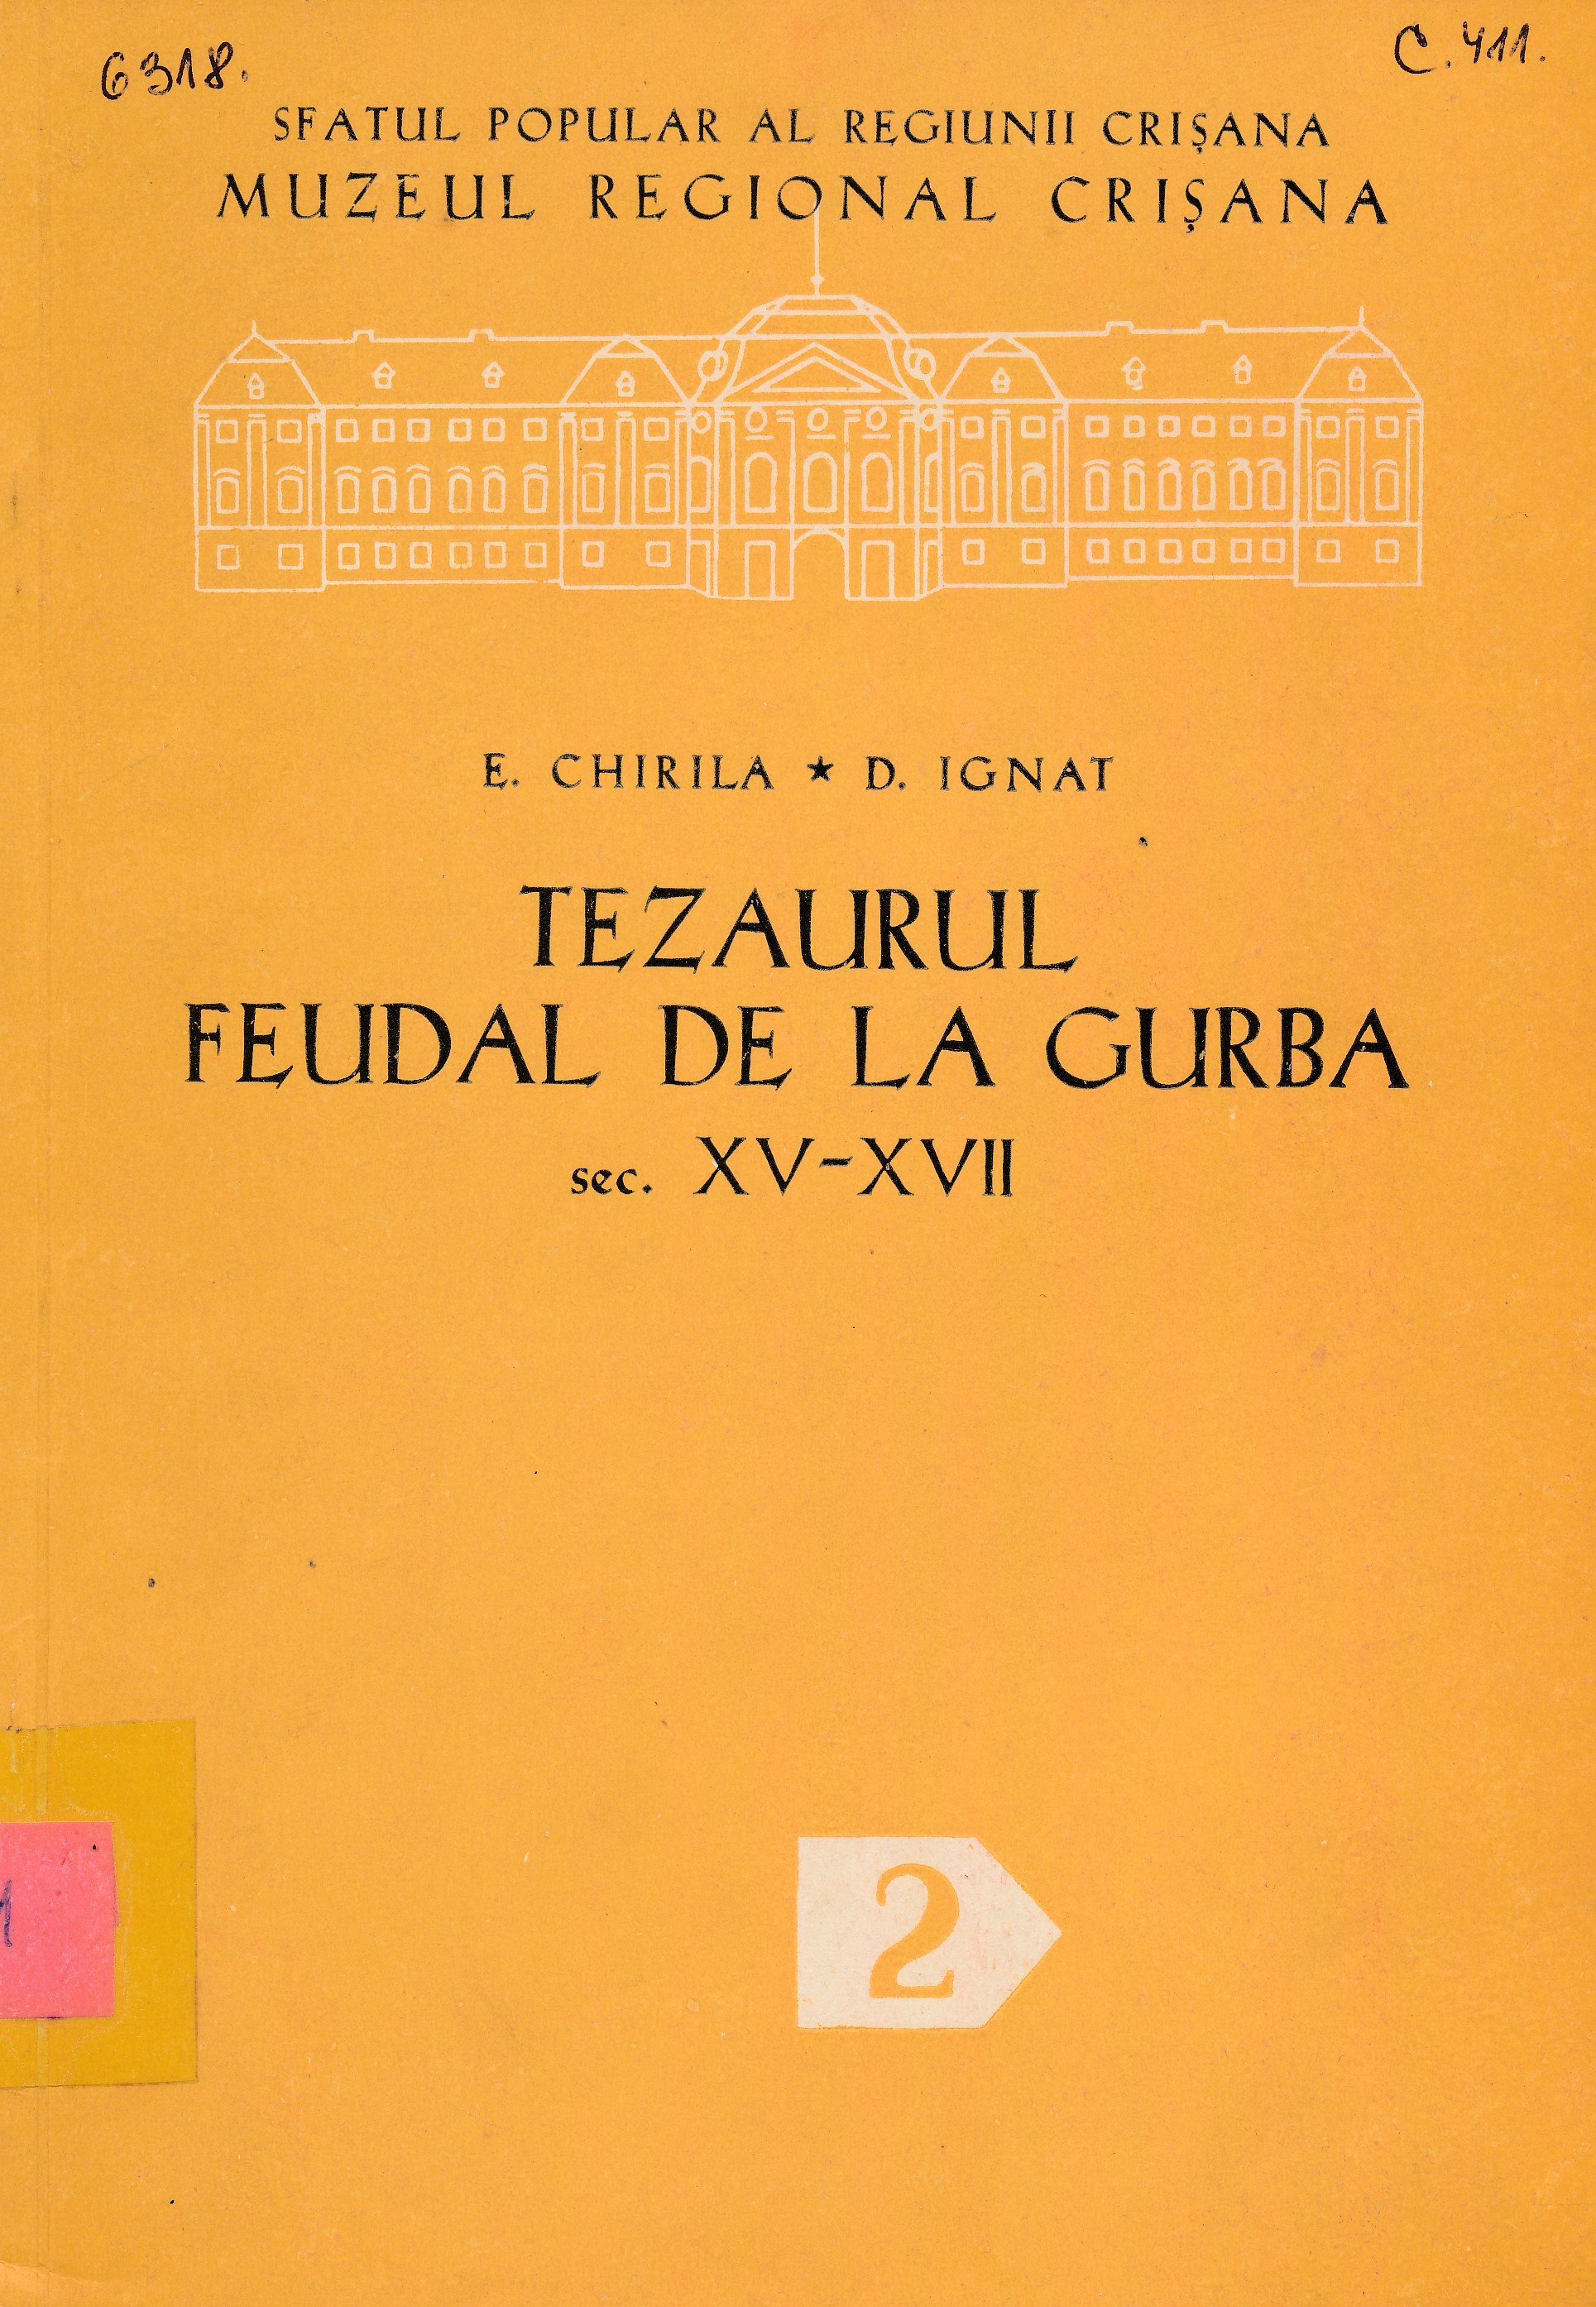 Tezaurul Feudal De La Gurba sec. XV - XVII (Erkel Ferenc Múzeum és Könyvtár, Gyula CC BY-NC-SA)